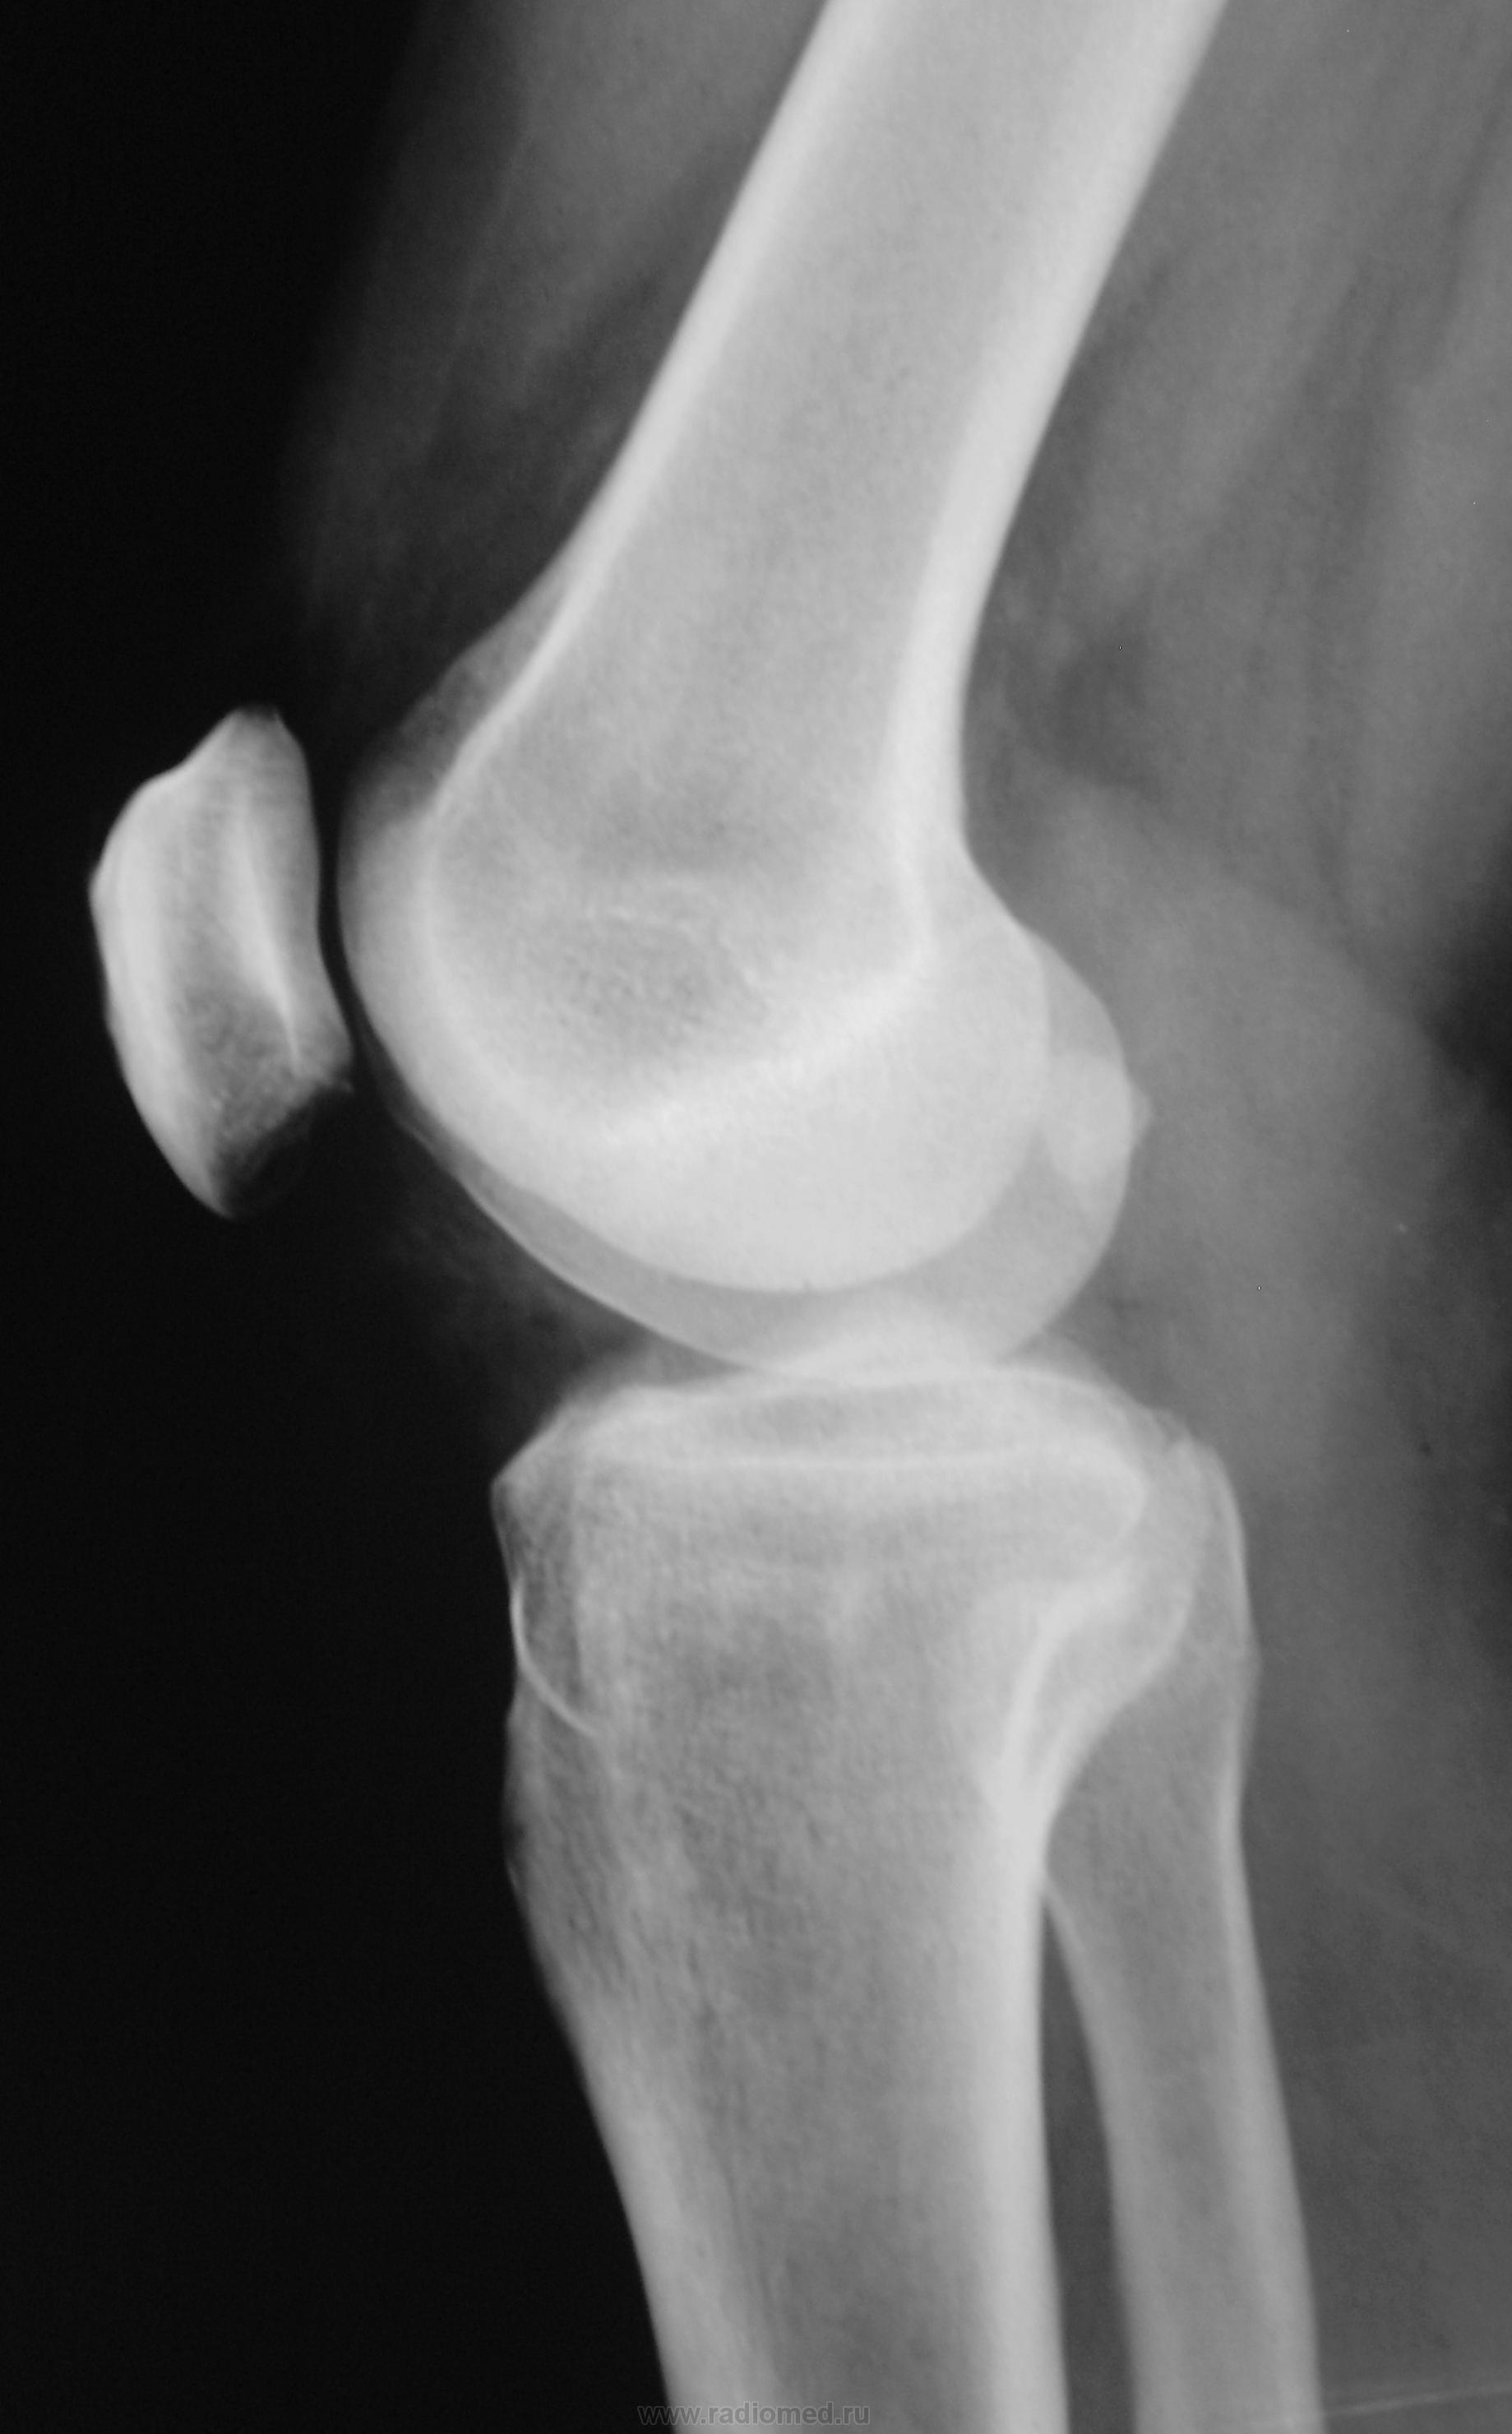 Фото рентгена коленного сустава